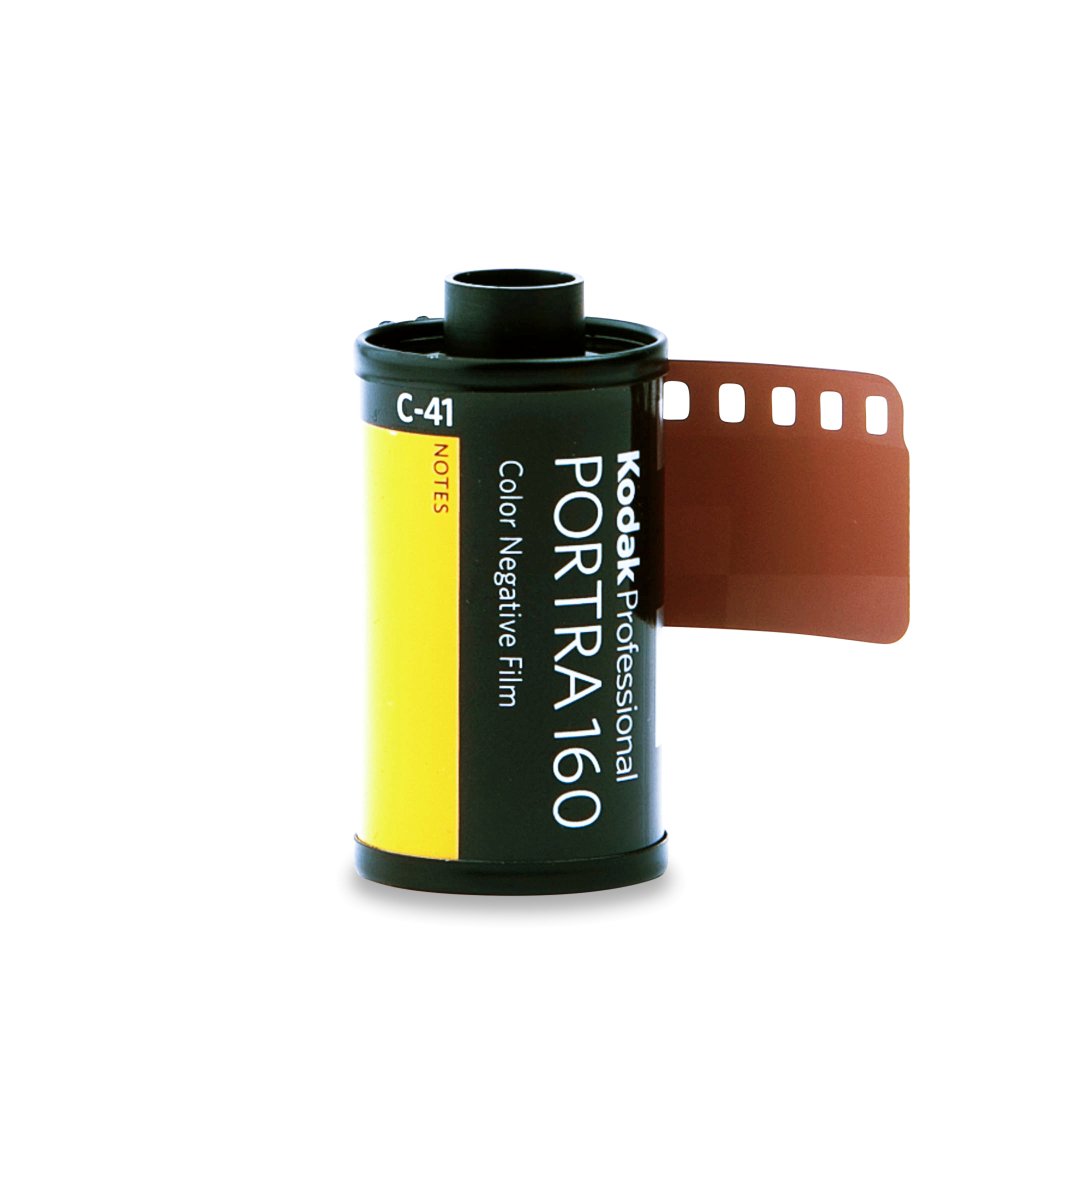 Kodak Portra 160 - 35mm - 36 Exposure - Single Roll - Rewind Photo Lab - Kodak